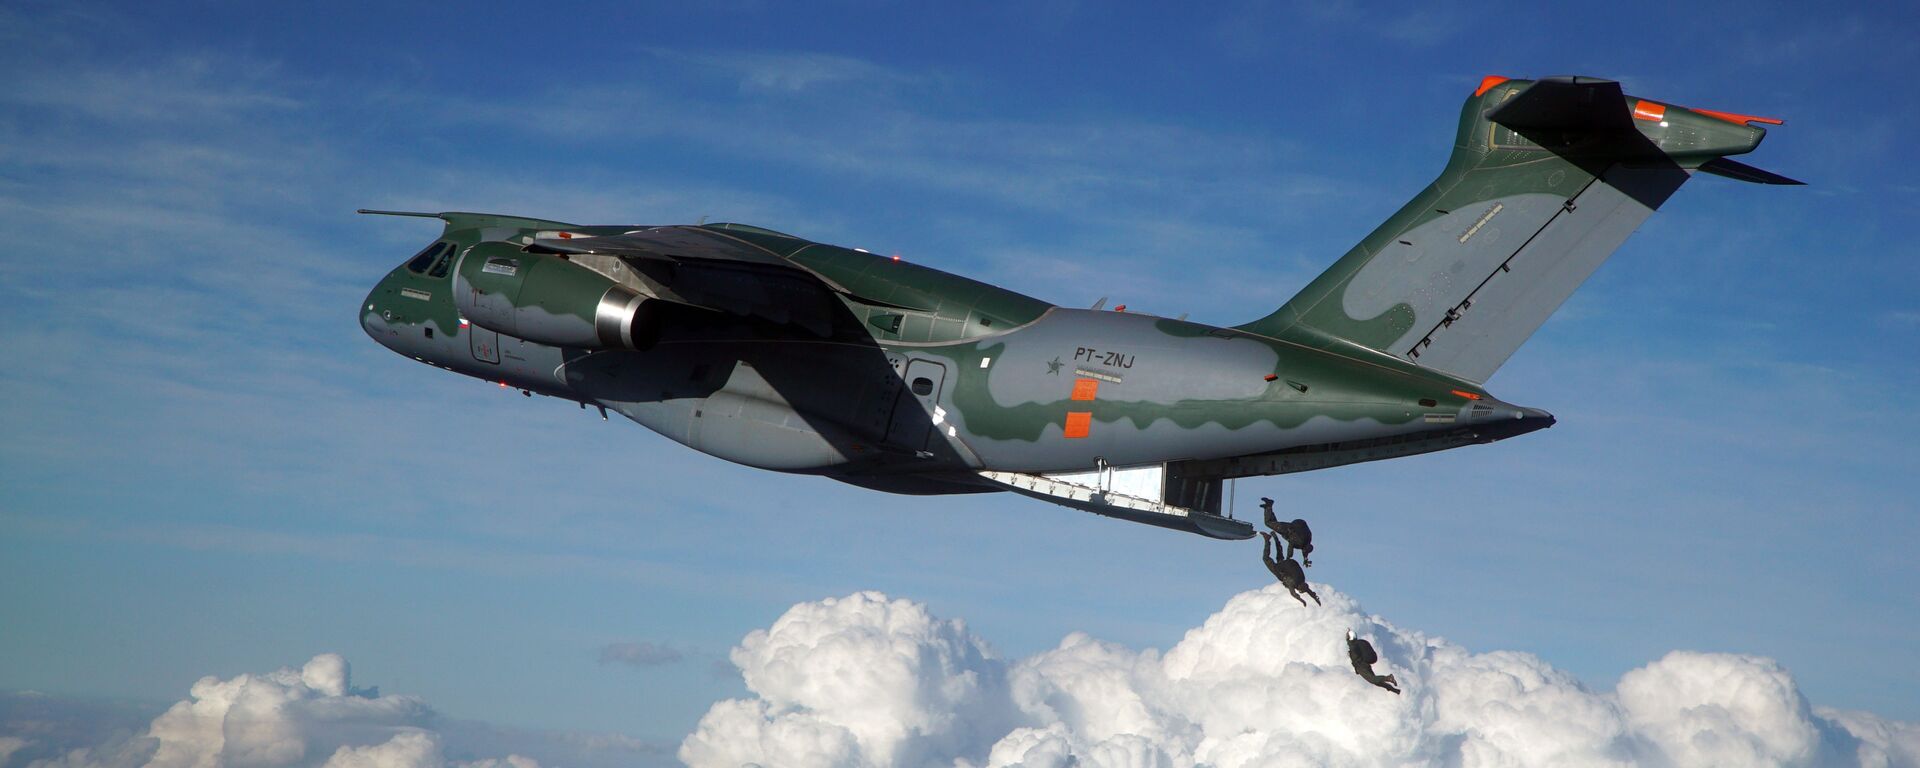 Avião KC-390, cargueiro militar fabricado pela Embraer - Sputnik Brasil, 1920, 16.11.2021